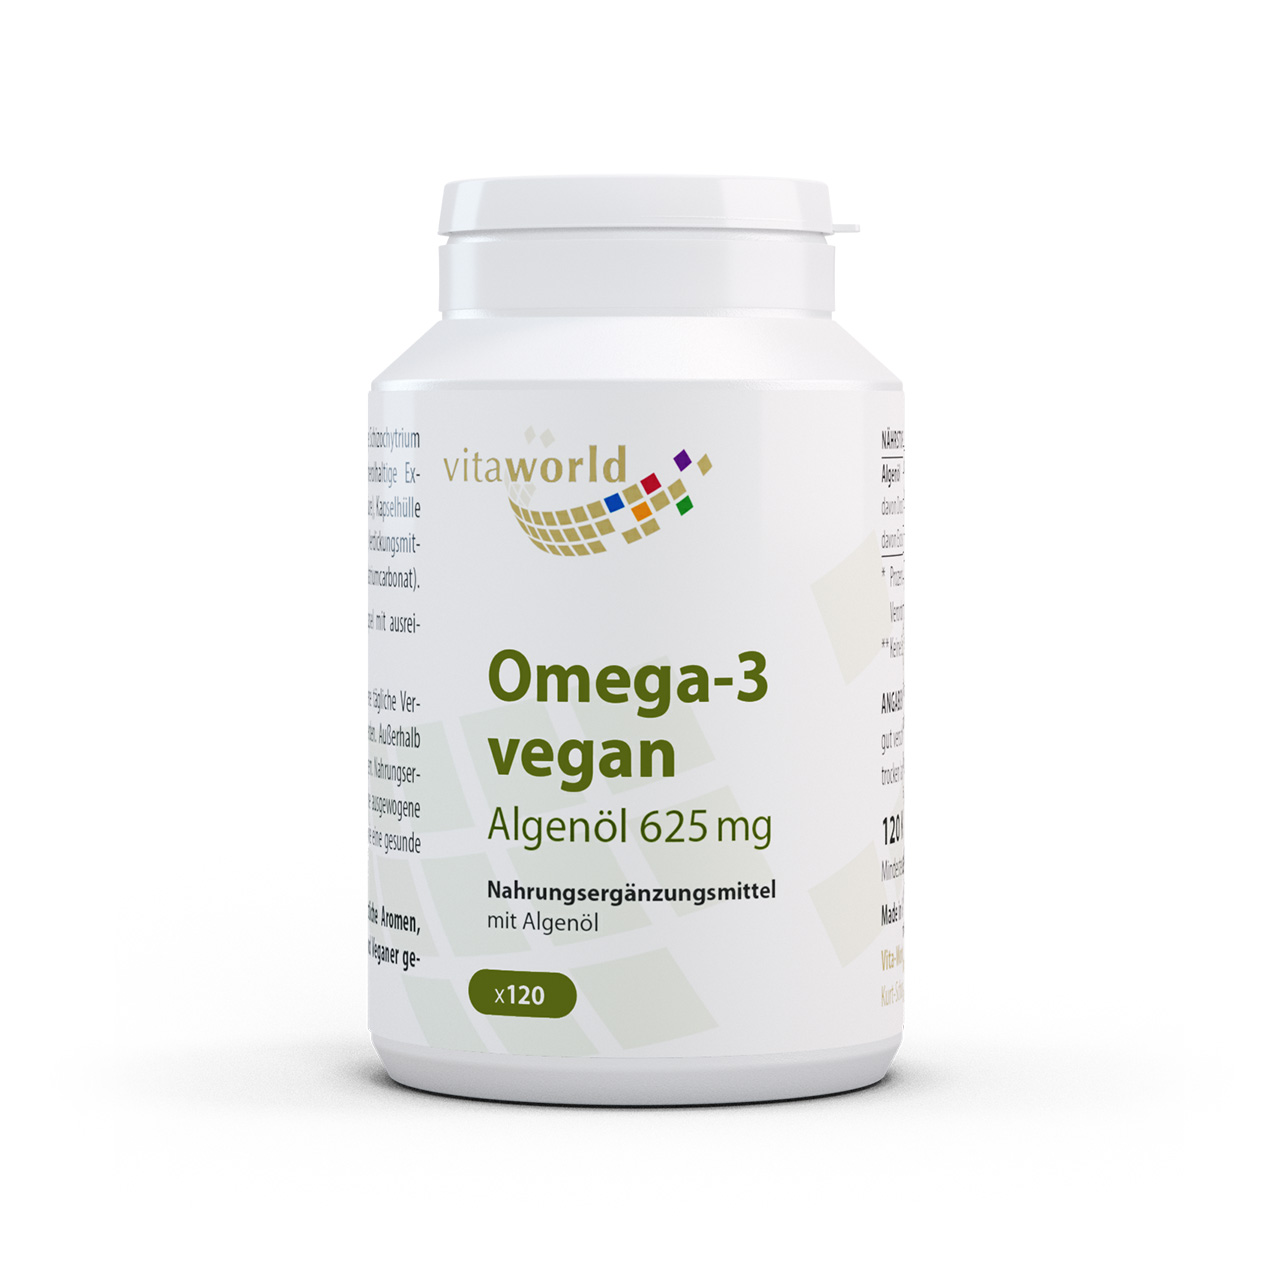 Vitaworld Omega 3 vegan Algenöl | 120 Kapseln | 250 mg DHA pro Kapsel | gluten- und laktosefrei